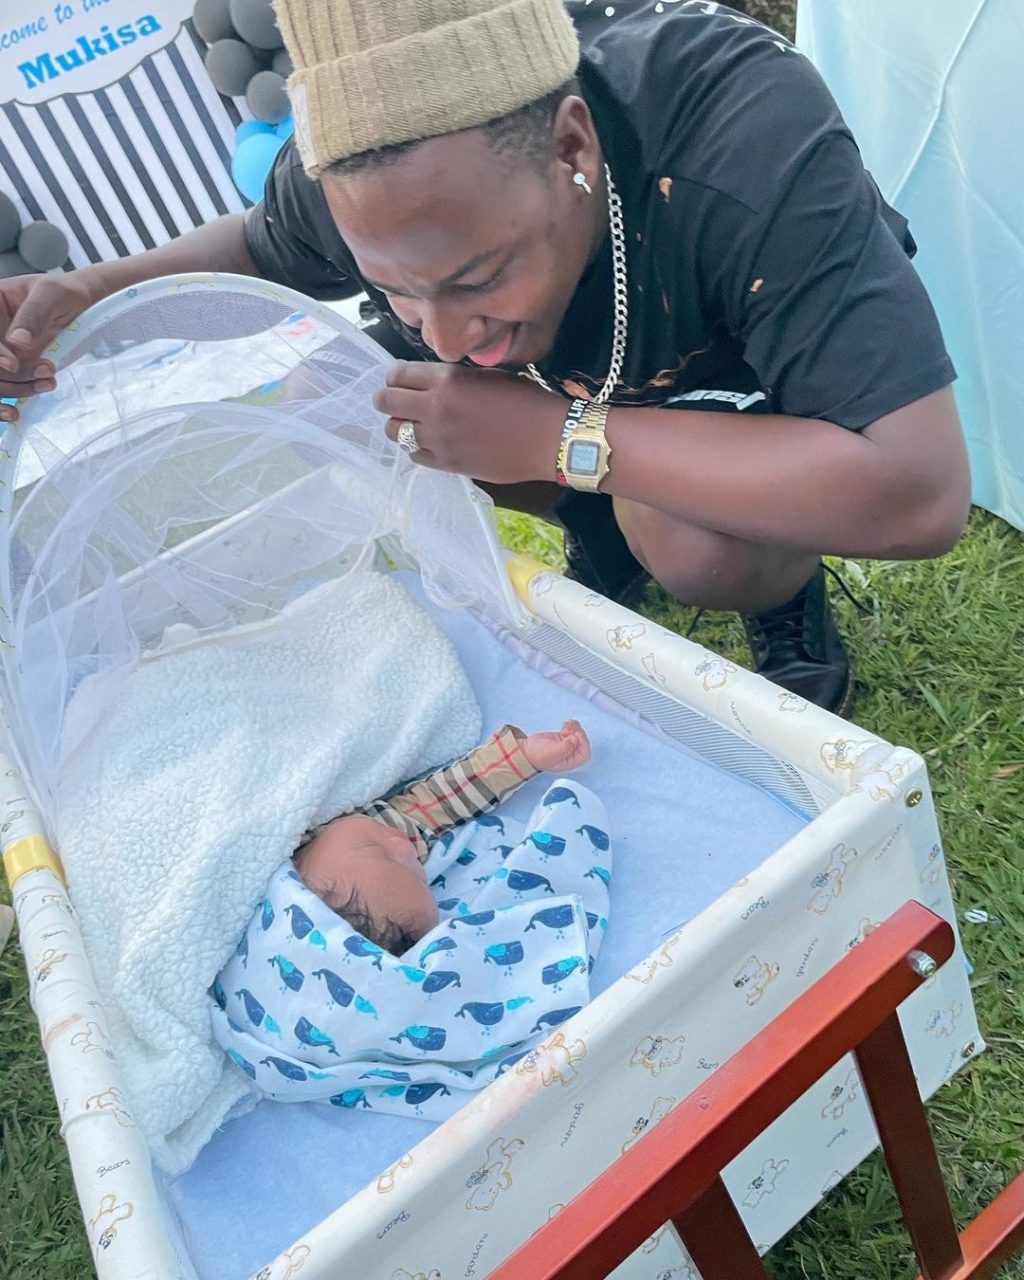 Zex Bilangilangi checking on newly born baby